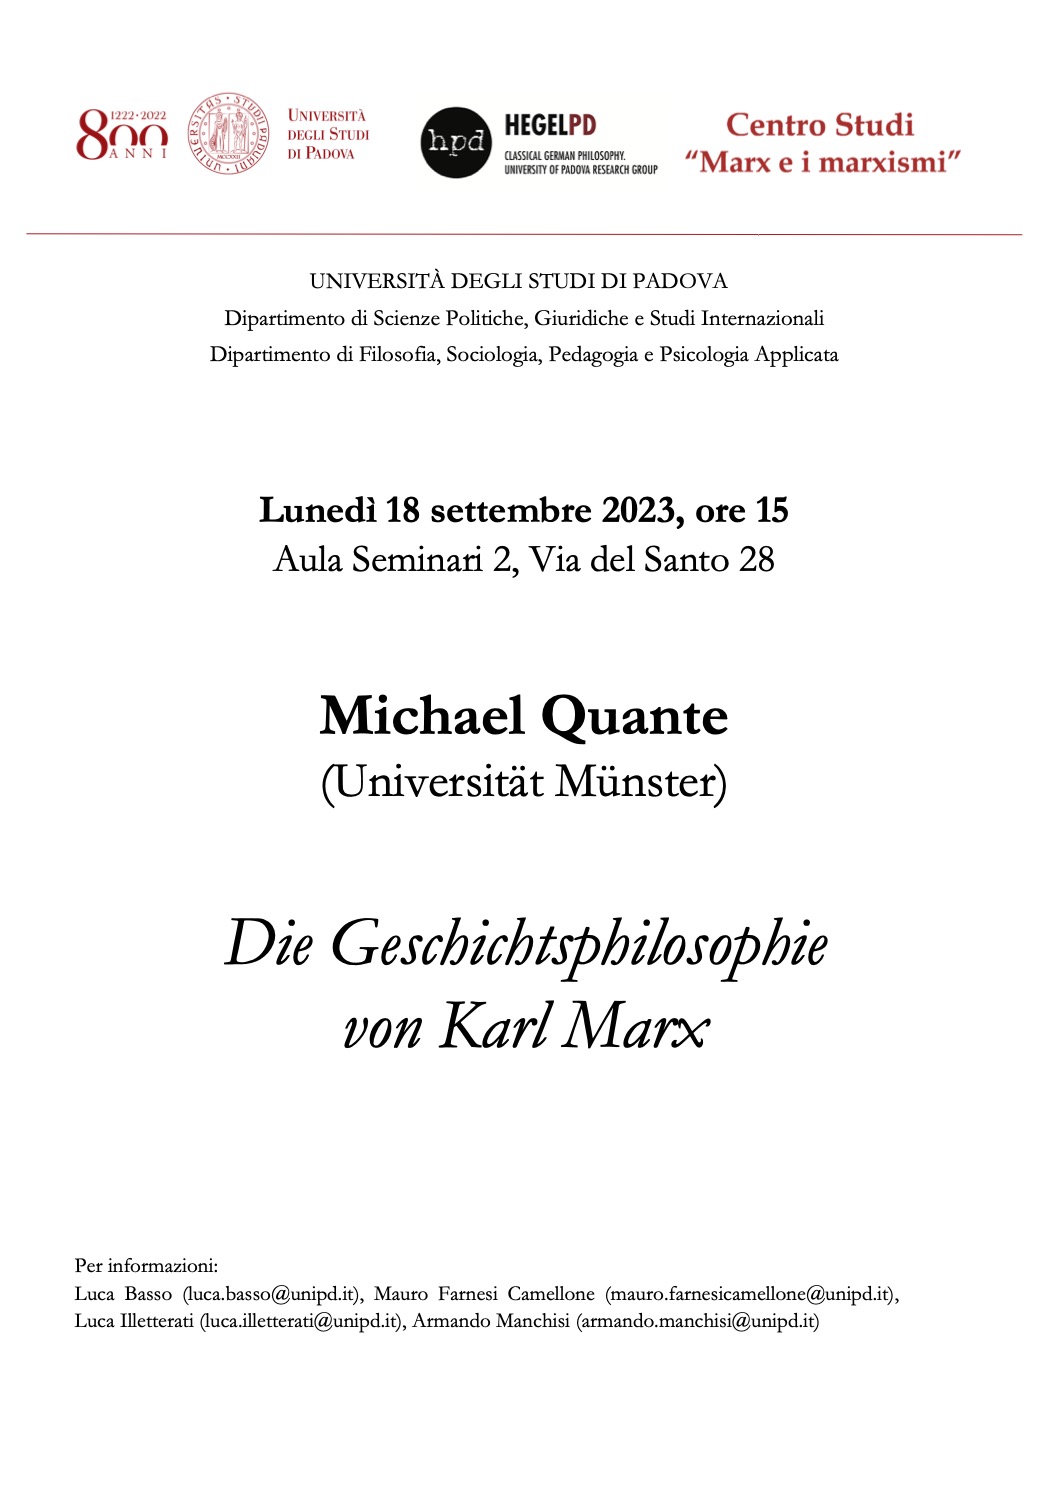 Lecture: Michael Quante, “Die Geschichtsphilosophie von Karl Marx” (Padova, 18 September 2023)